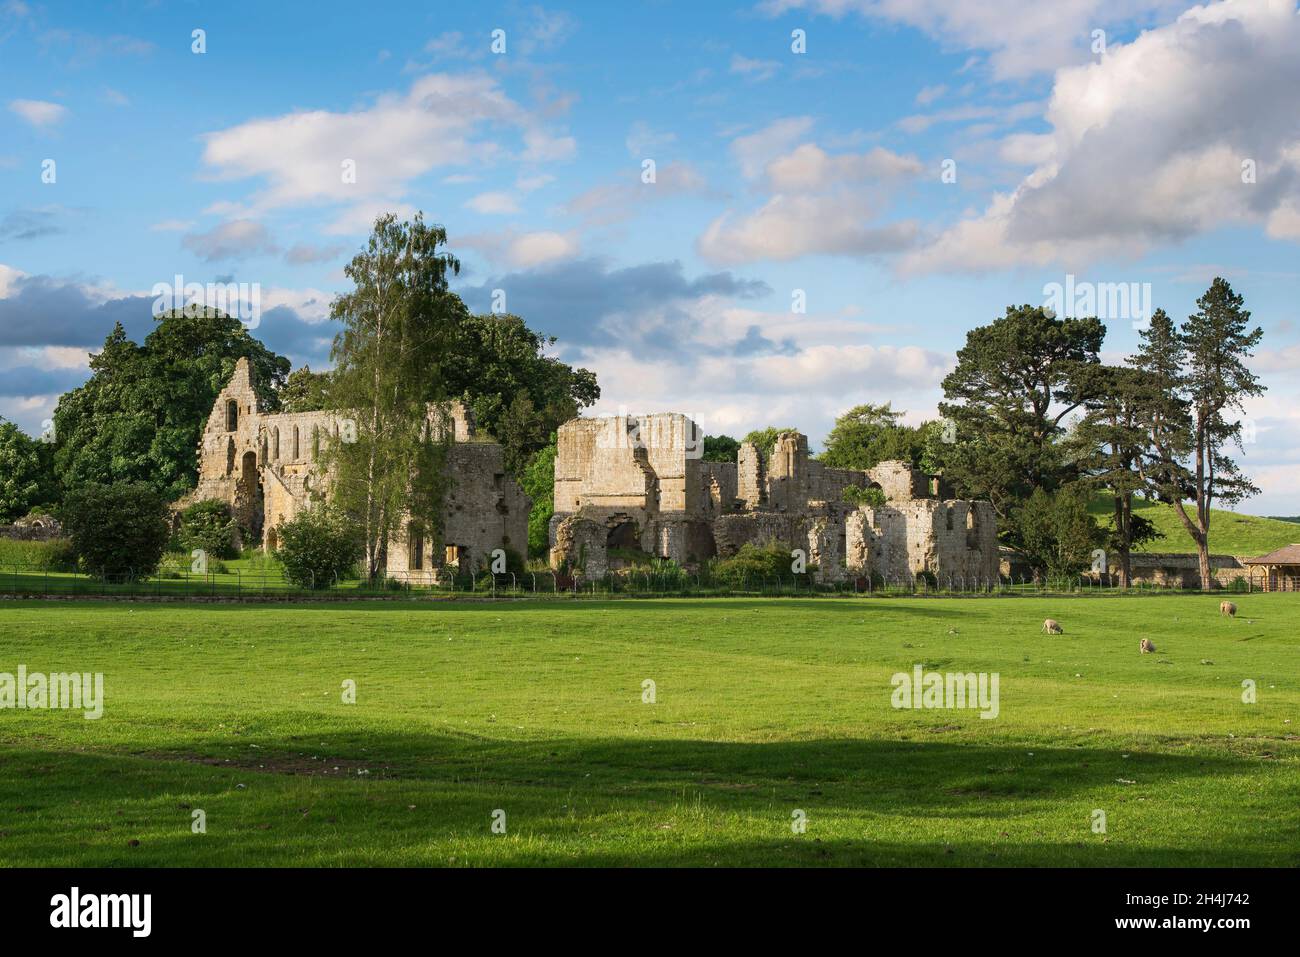 Ruinas de la abadía, ver en verano las ruinas atmosféricas de un monasterio cisterciense del siglo 12th (Jervaulx Abbey), North Yorkshire, Inglaterra, Reino Unido Foto de stock